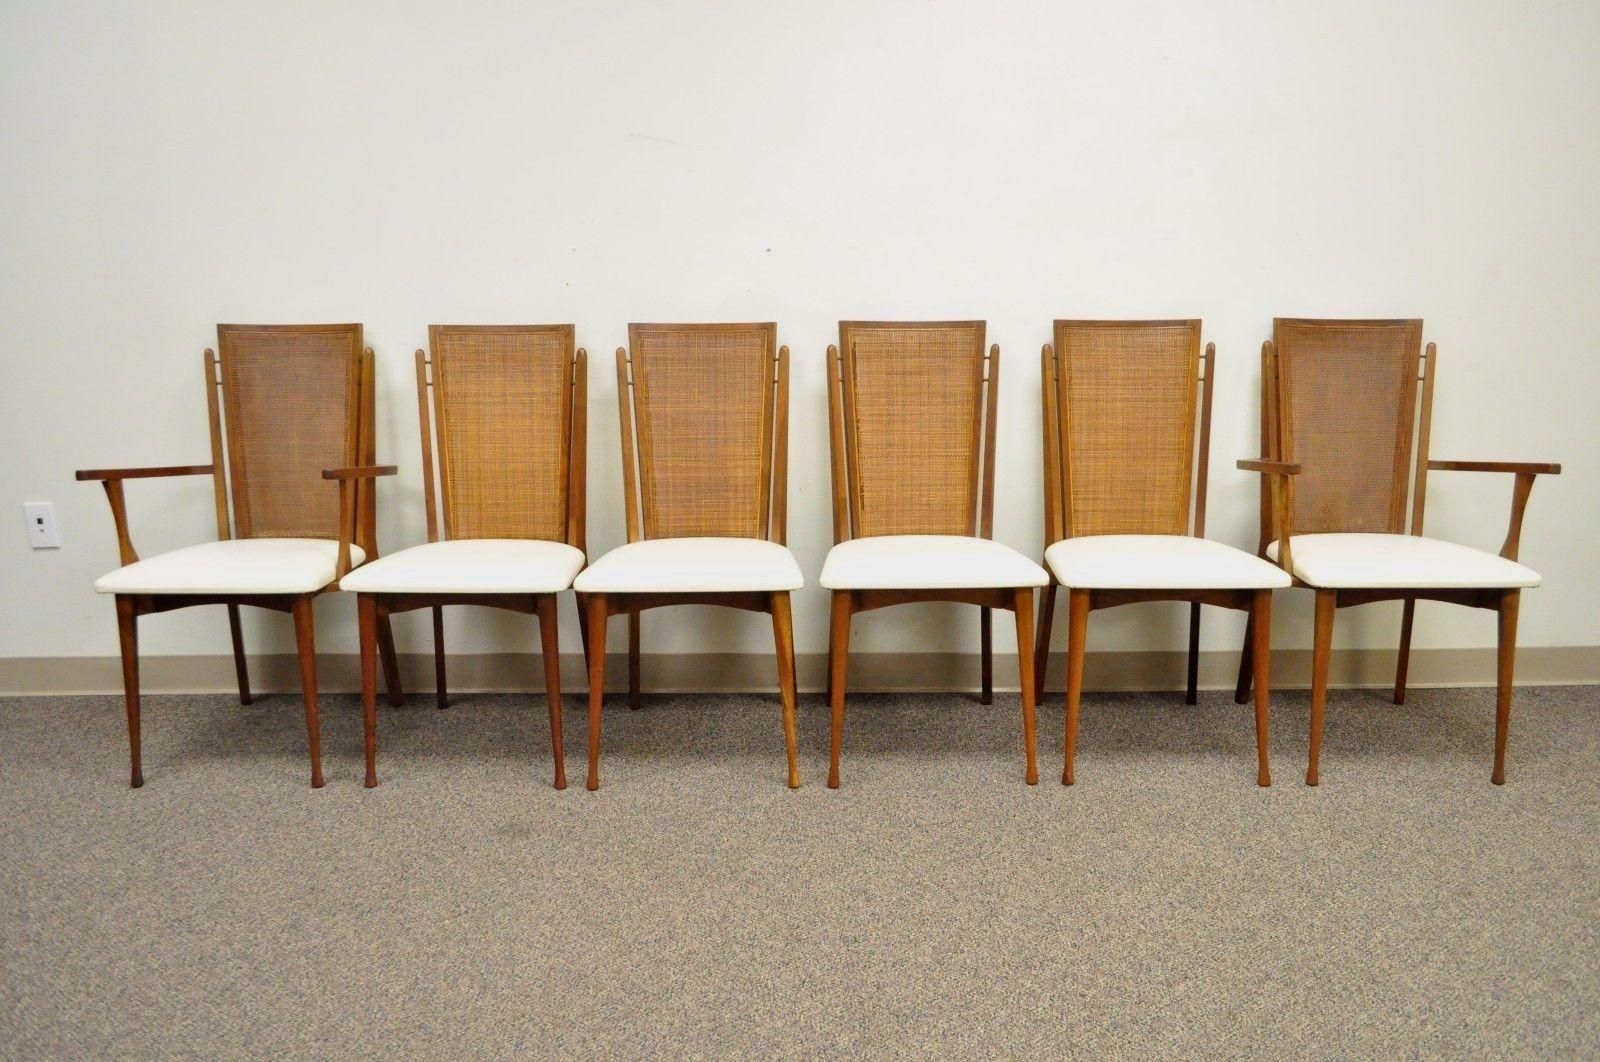 Ensemble de six chaises de salle à manger vintage à dossier canné de style moderne du milieu du siècle dernier, par Specialty Woodcraft. Cet article comprend 2 fauteuils, 4 chaises latérales, des cadres sculpturaux en teck massif, des pieds avant en